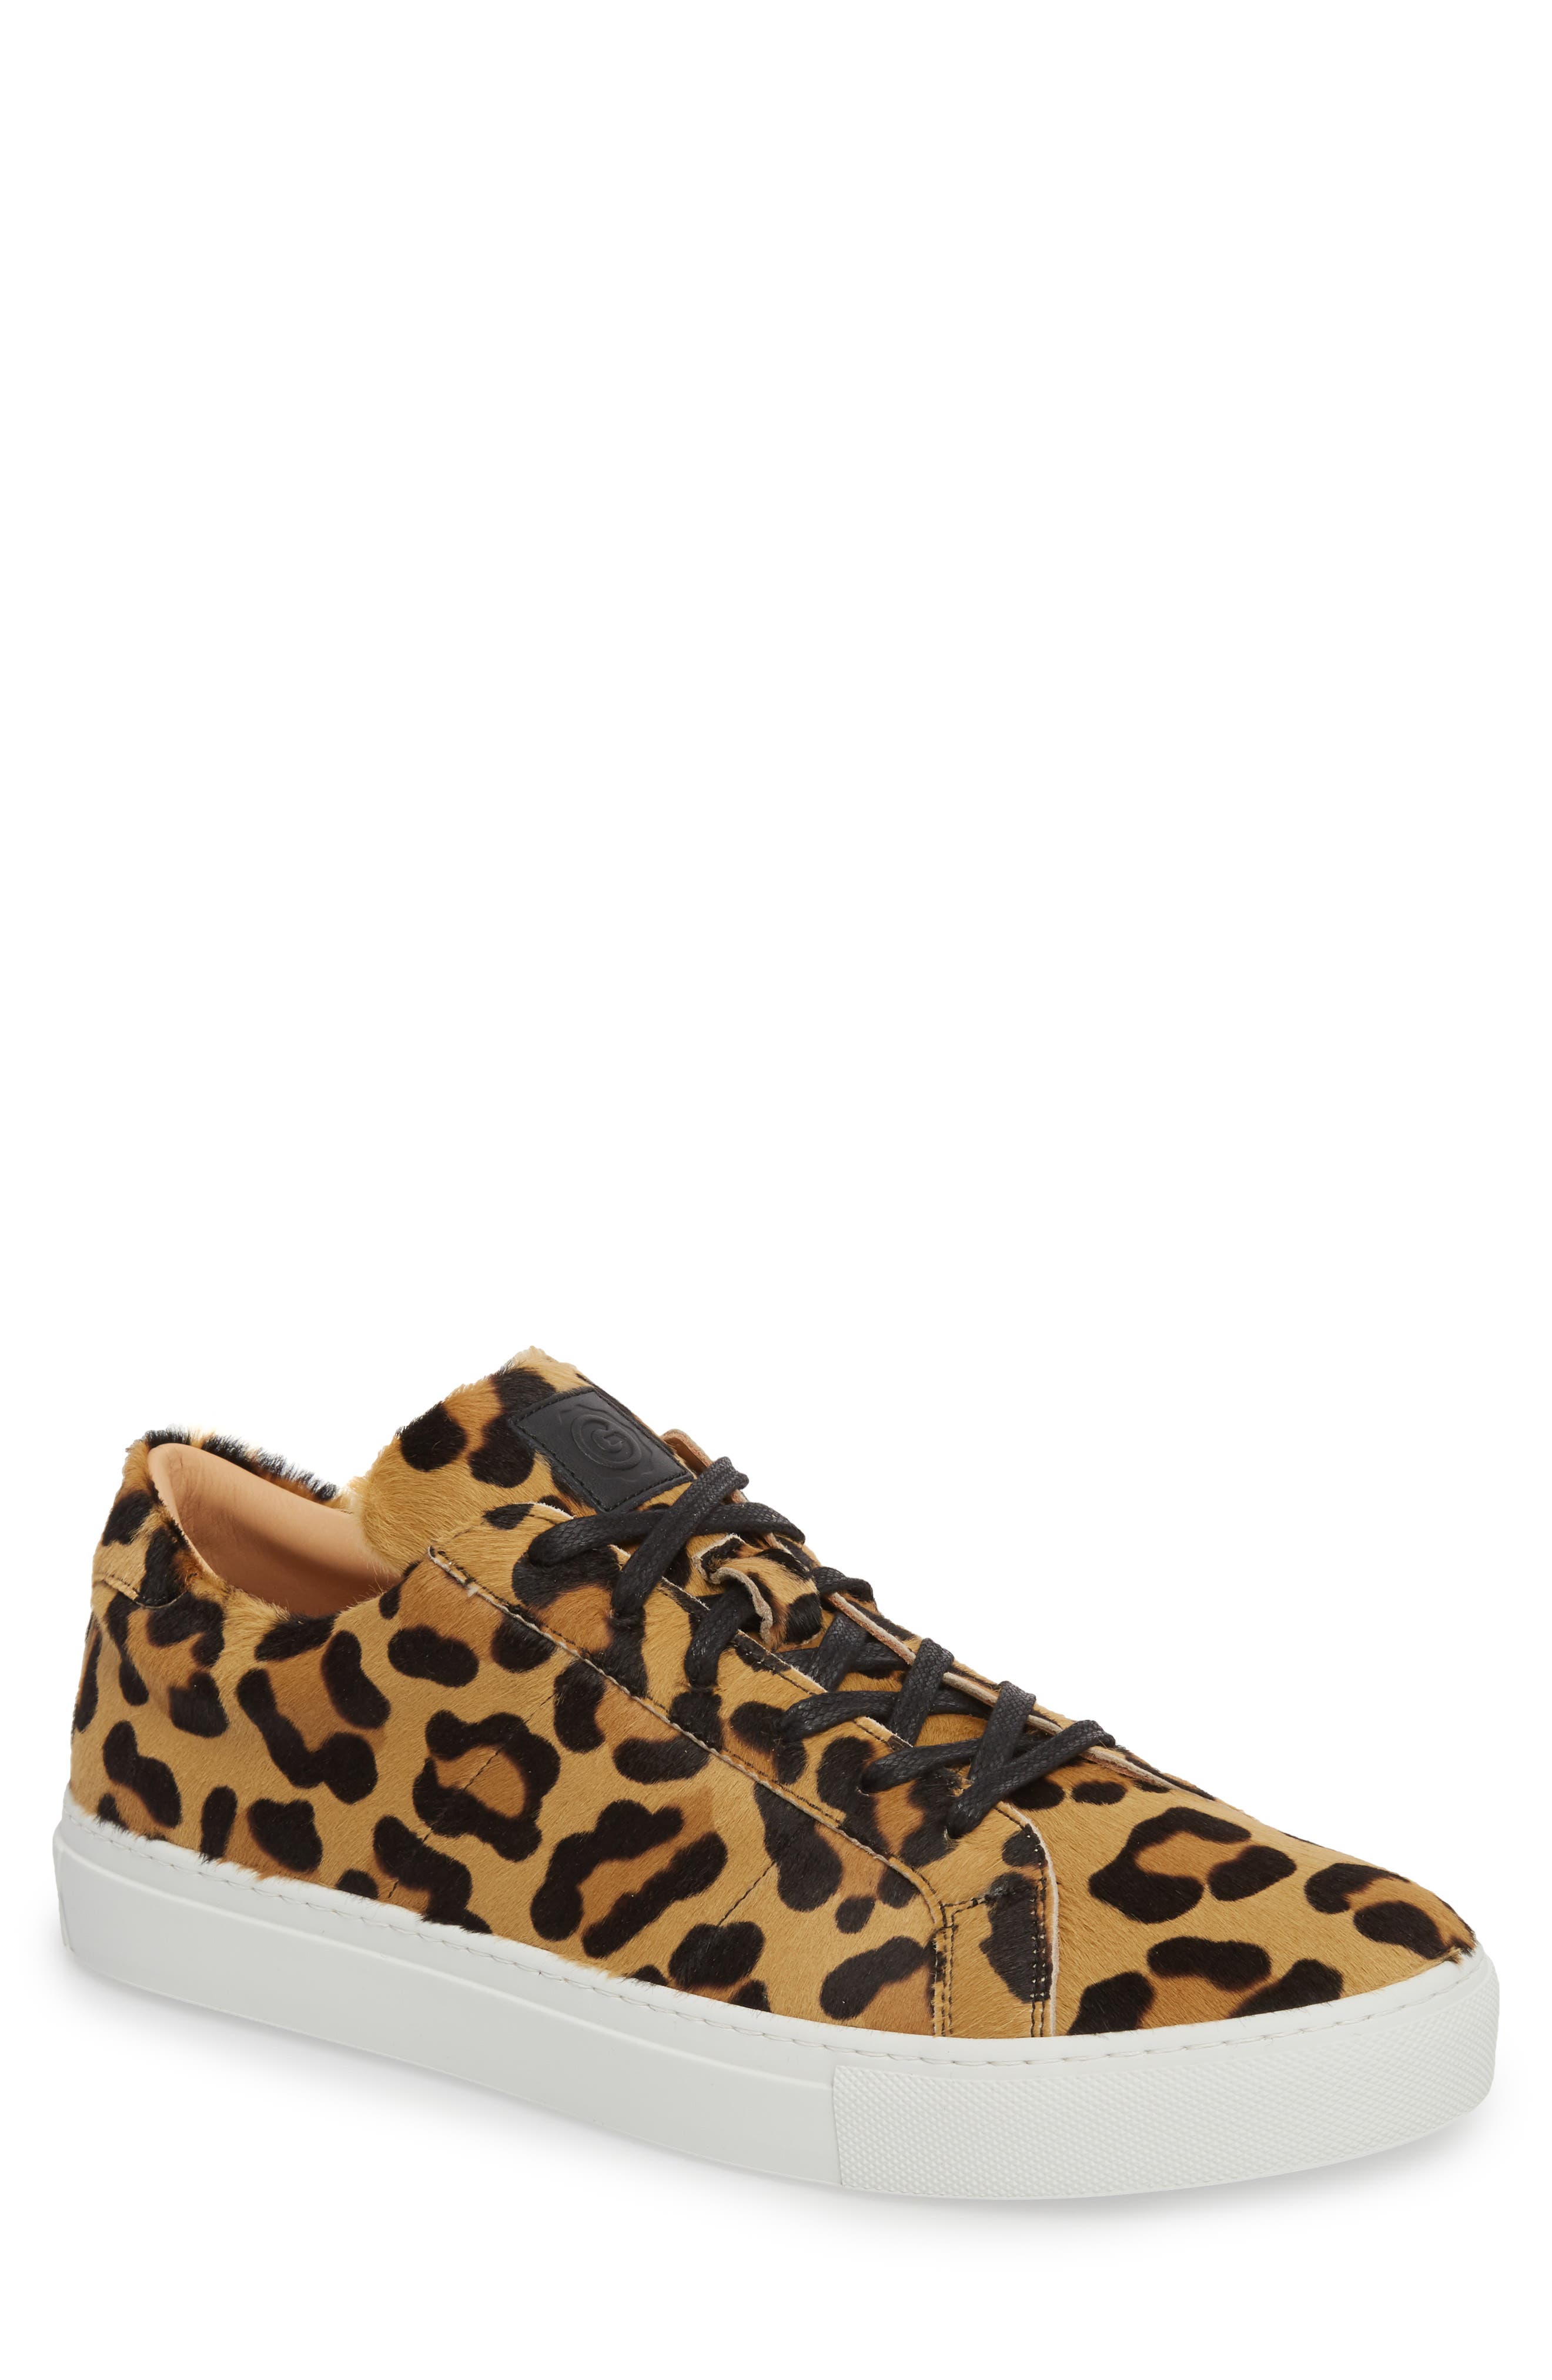 greats leopard sneakers